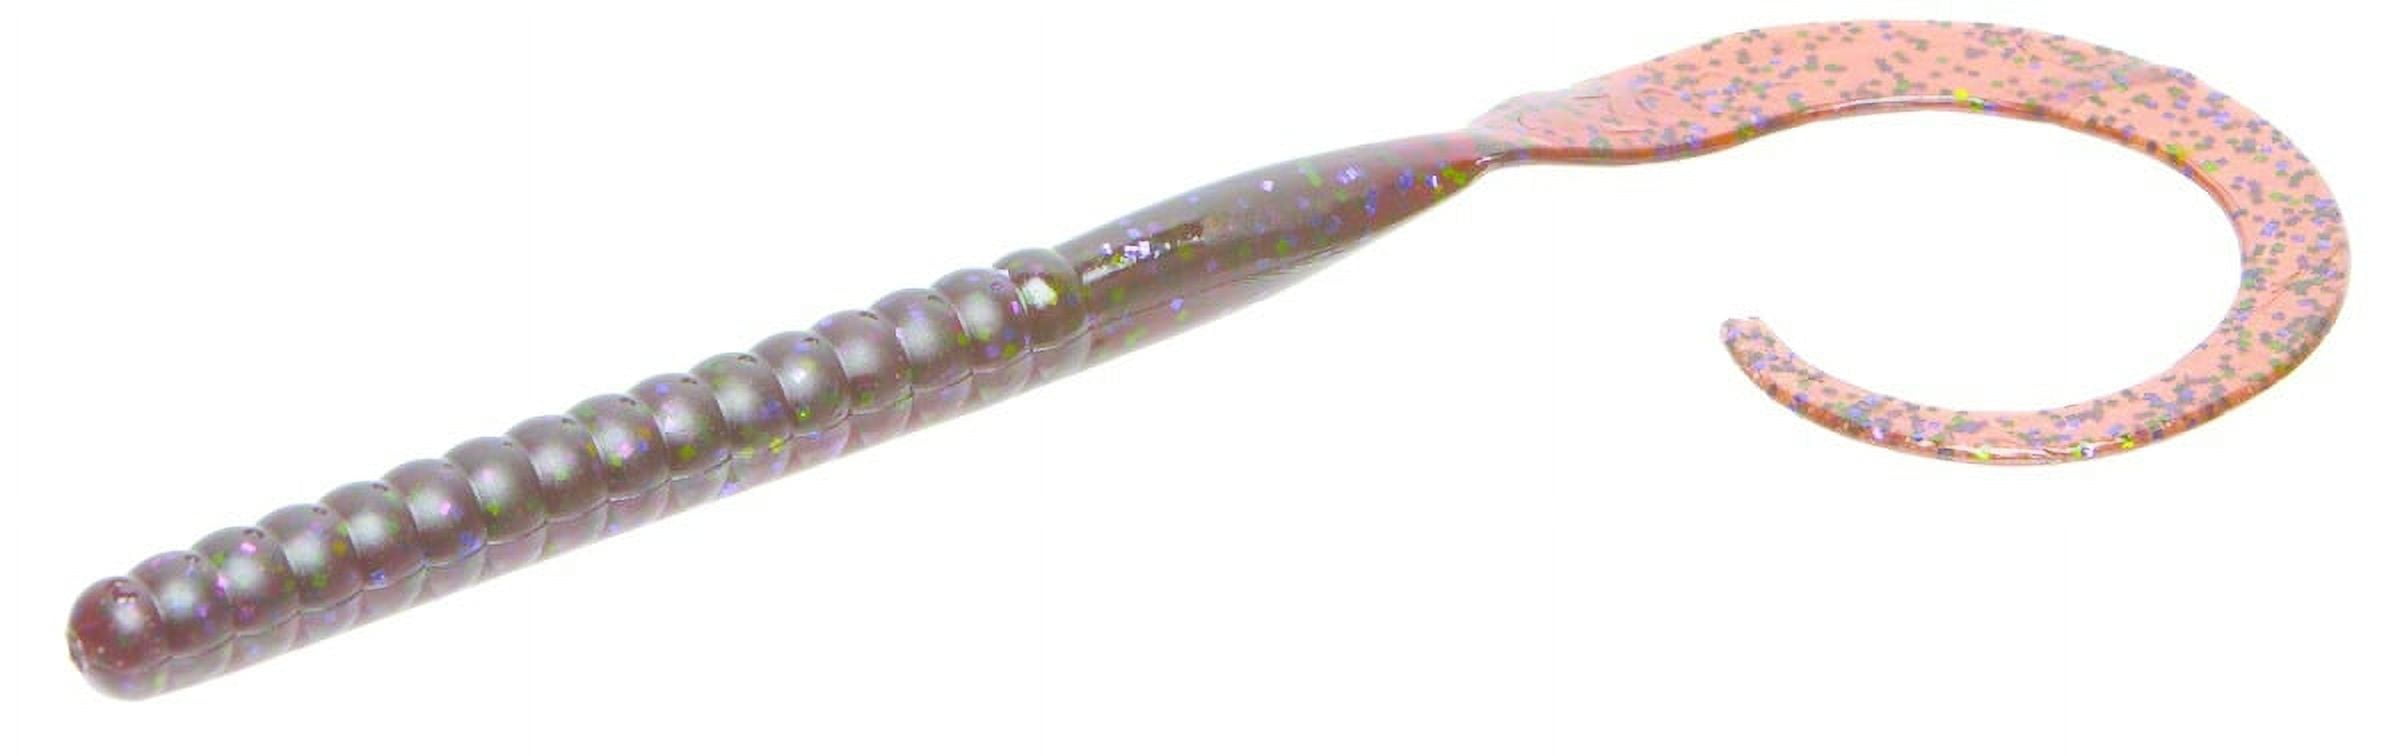 Zoom Ol' Monster Worm Freshwater Fishing Soft Bait, Plum Apple, 10